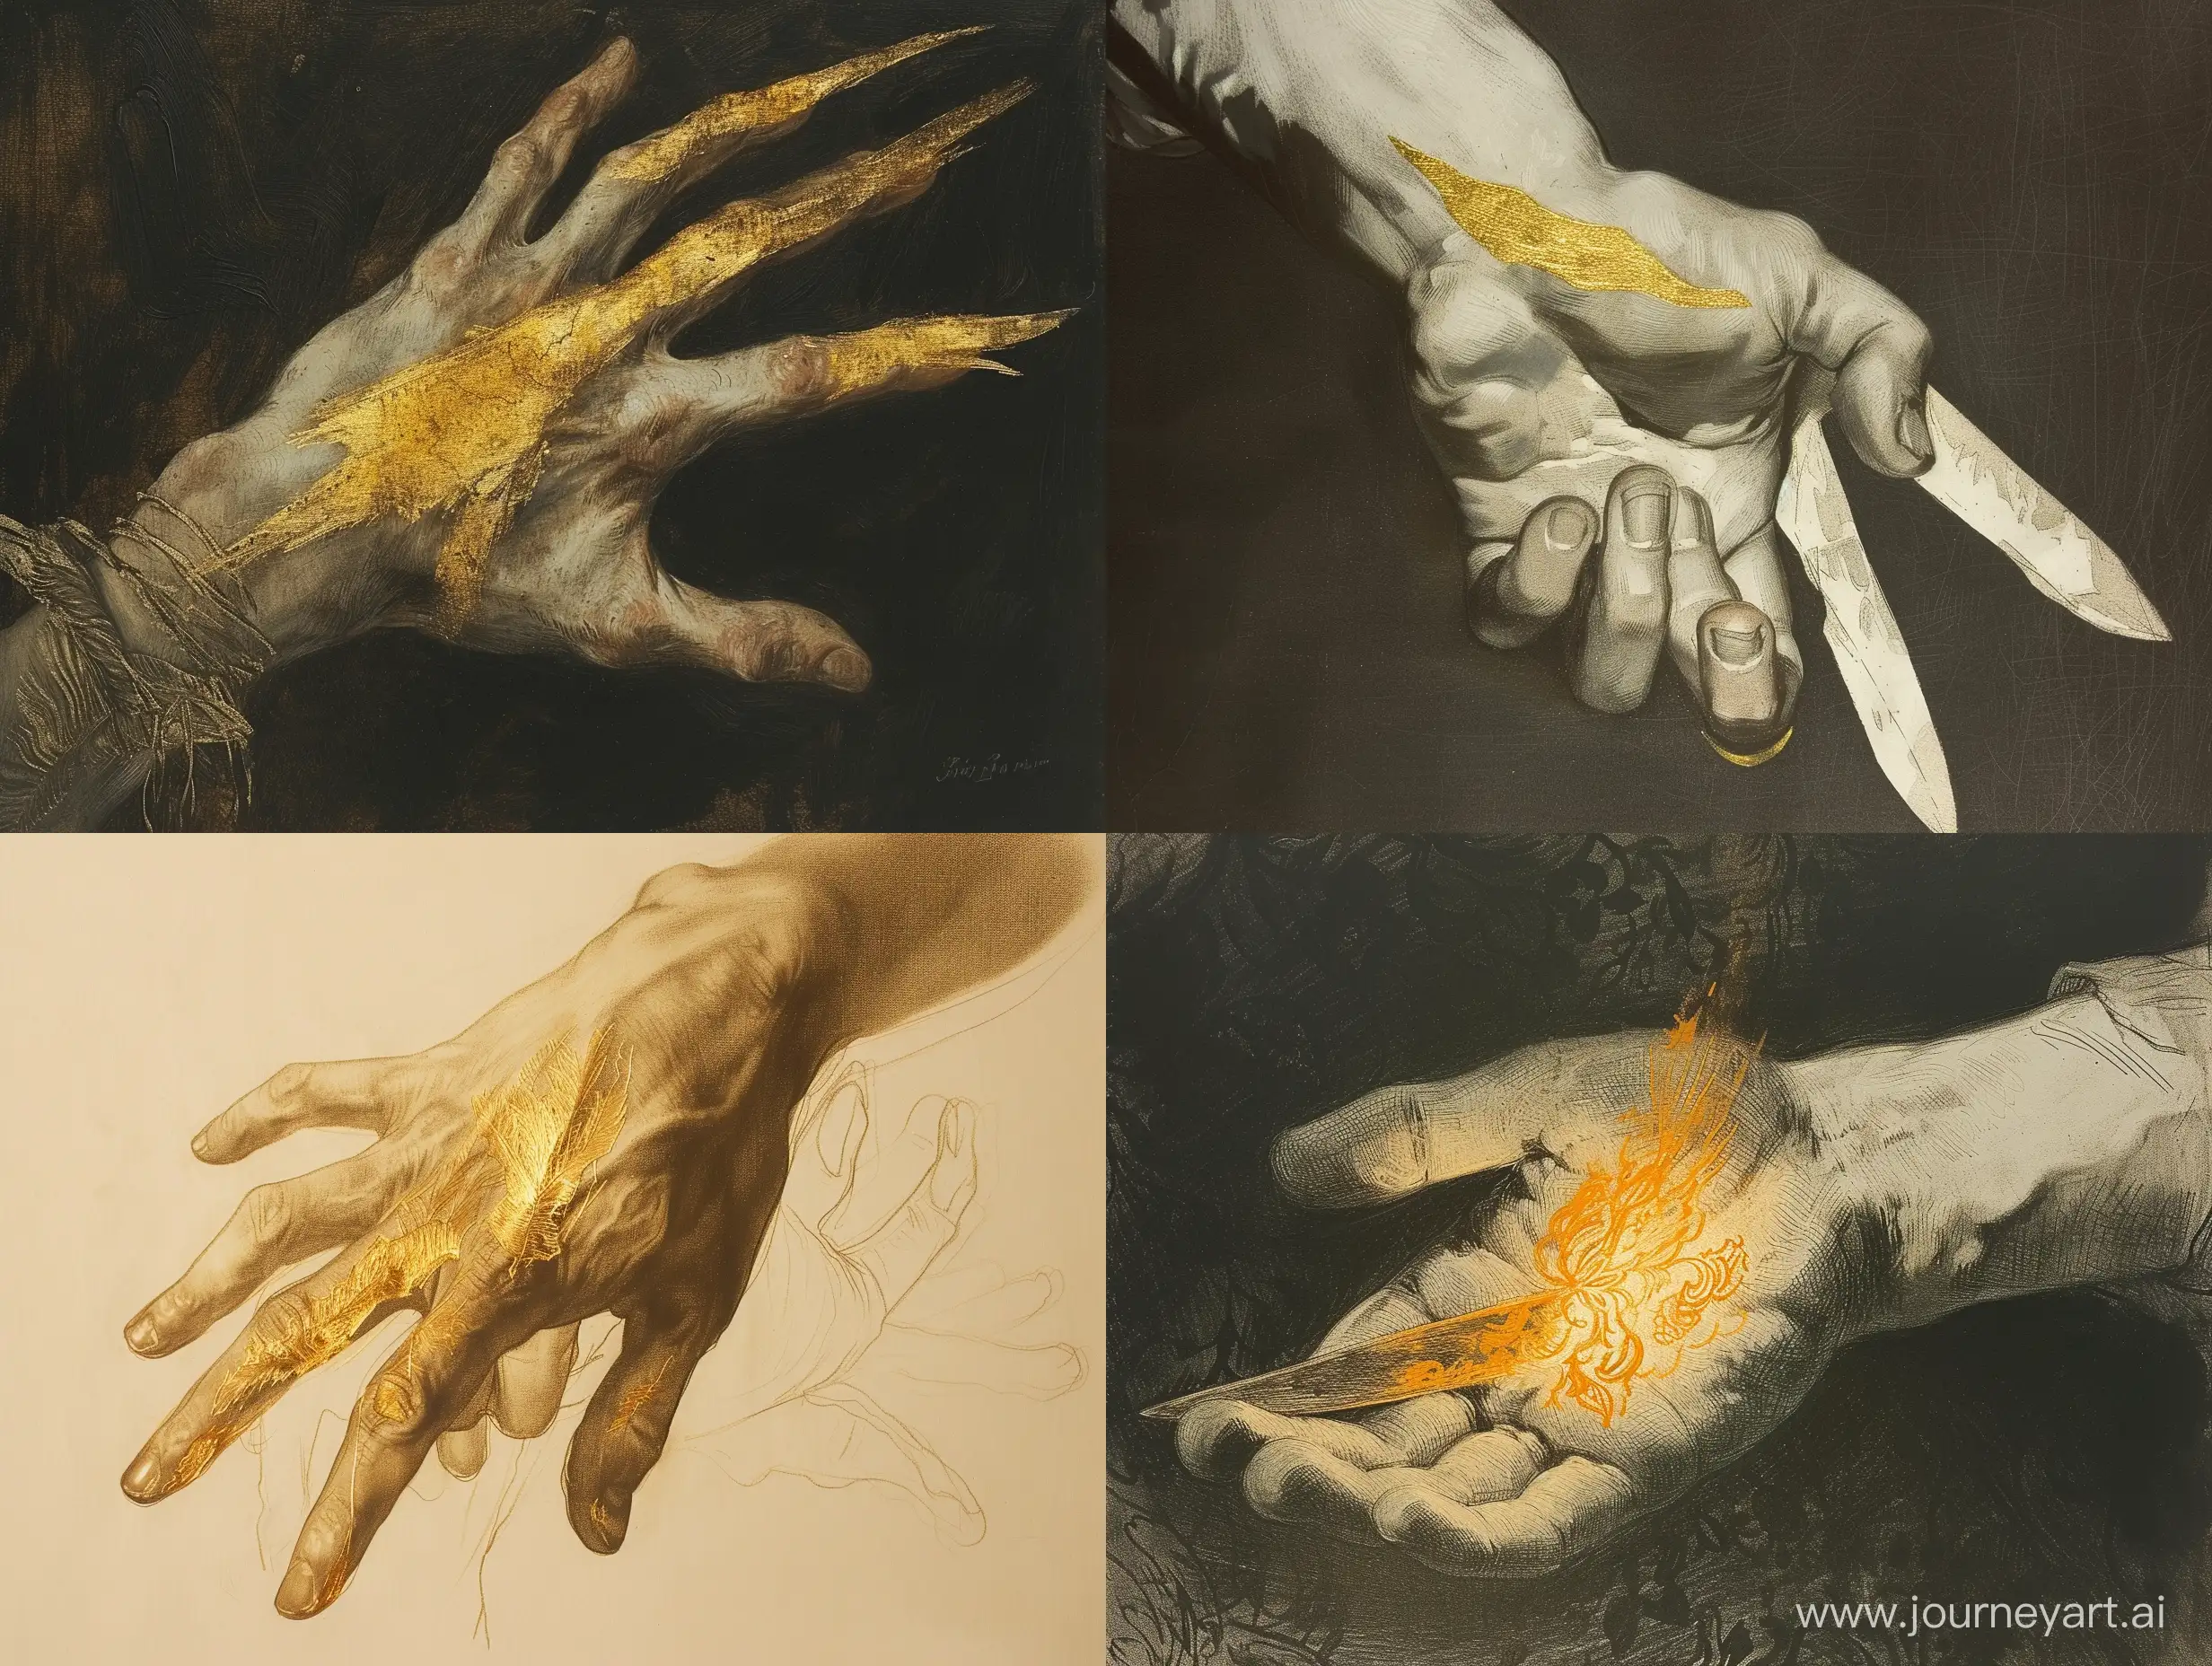 А развлечение художника — мучение
Лезвие оставляет на руке золотое рассечение, стиль рисунков российских художников 19 века